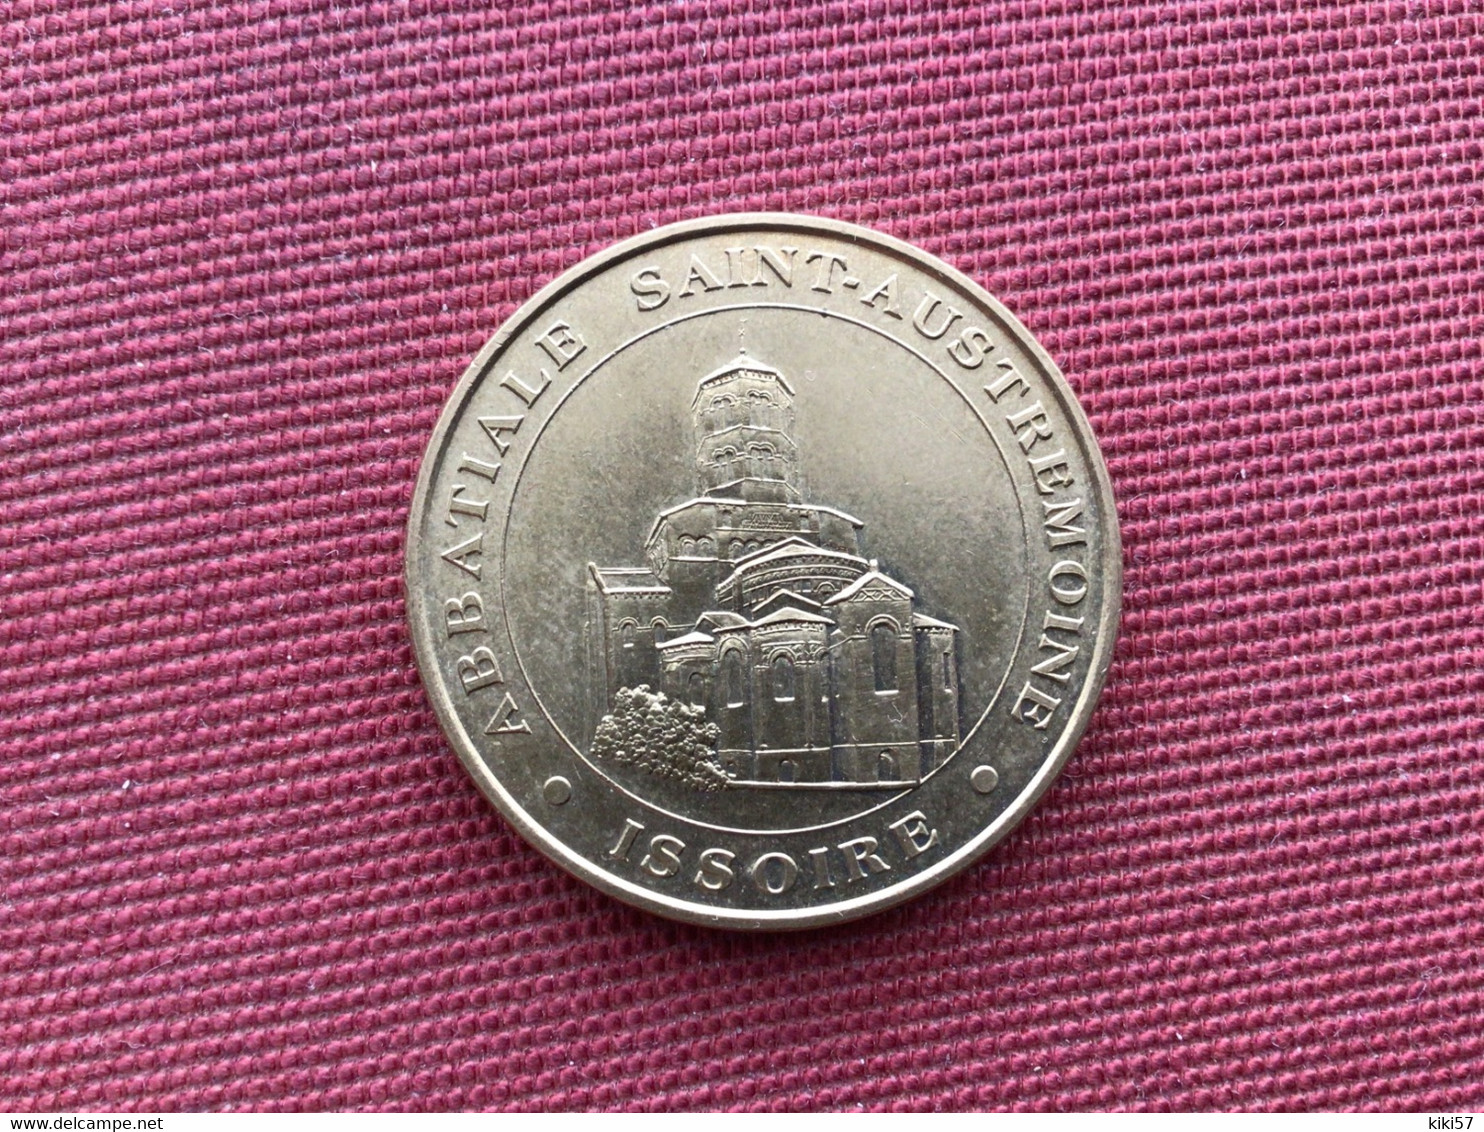 ISSOIRE Monnaie De Paris Abbatiale Saint Austremoine 1999 - Non-datés